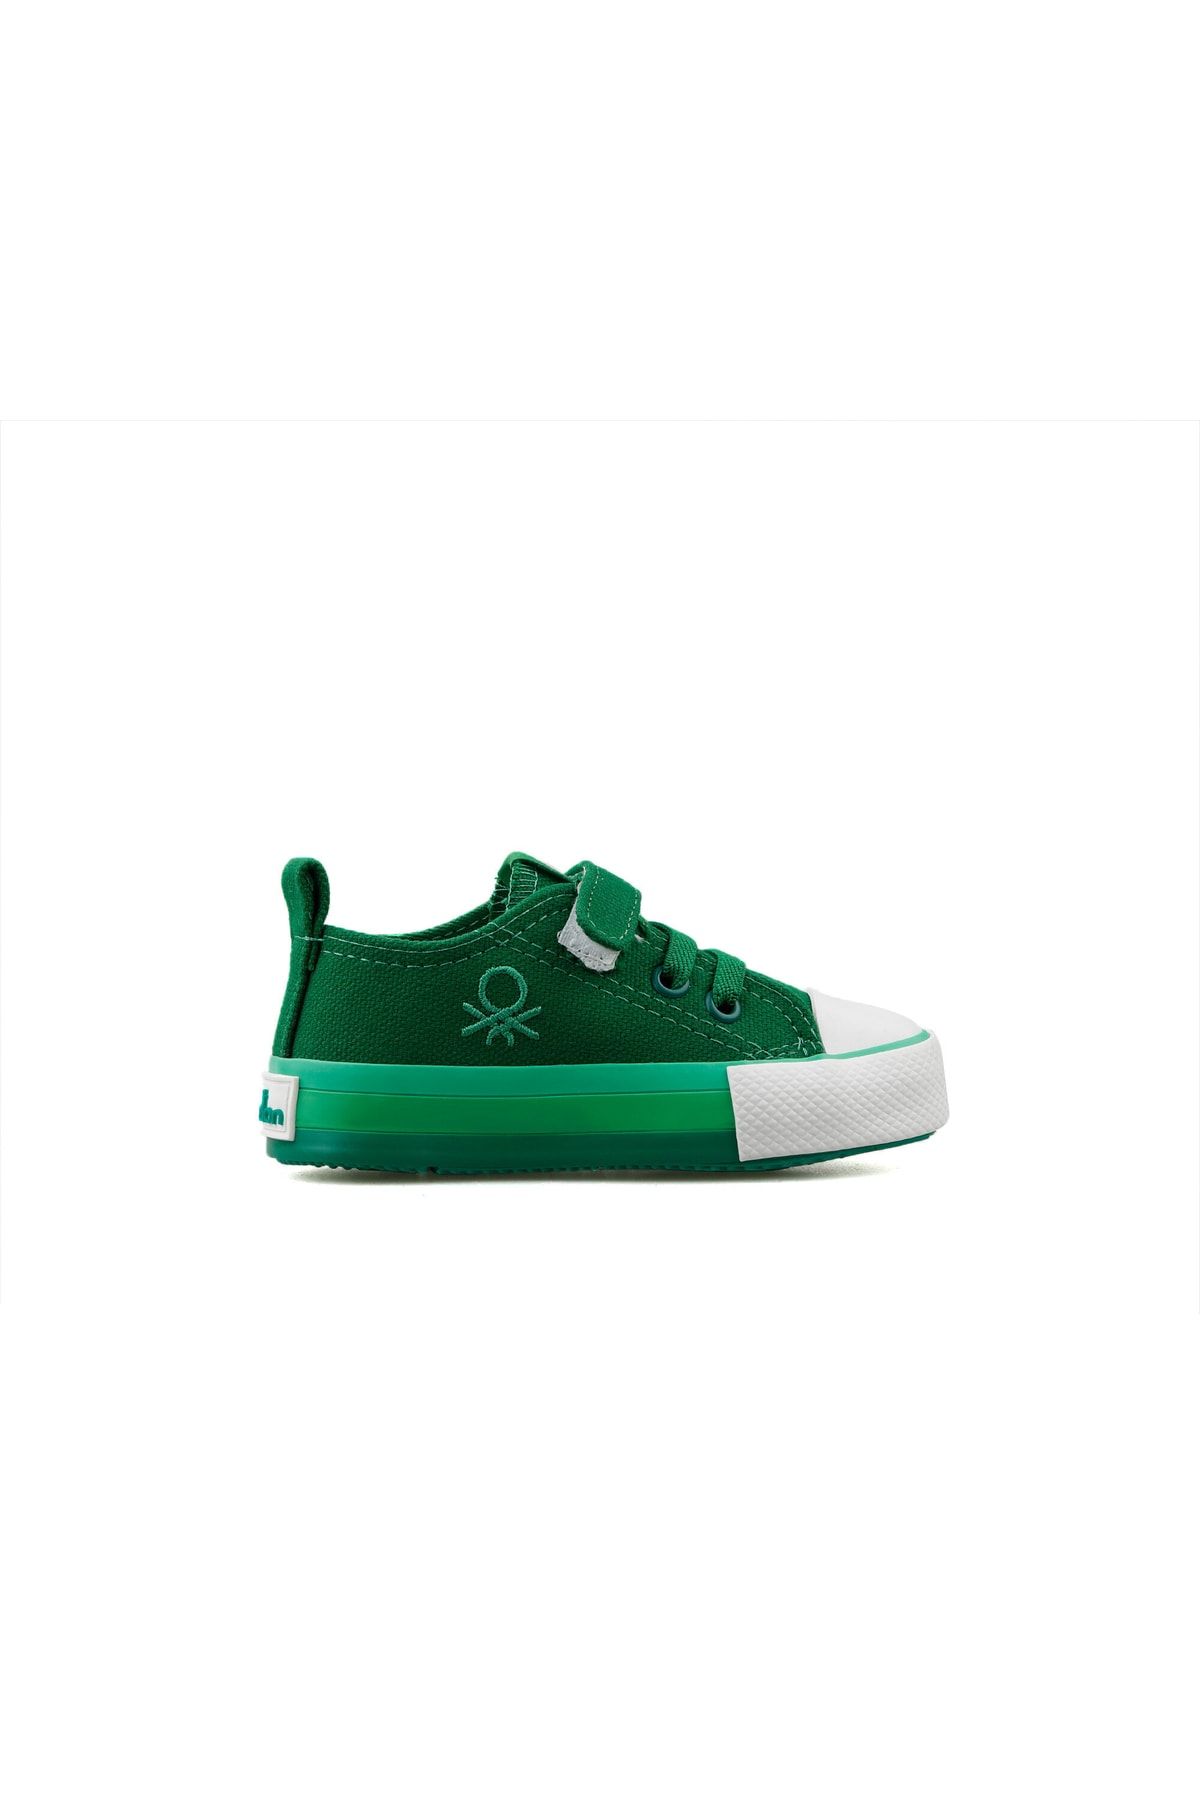 United Colors of Benetton Benetton Bn 30652 Yeşil Bebek Günlük Ayakkabı Bn-30652-yesıl Yeşil